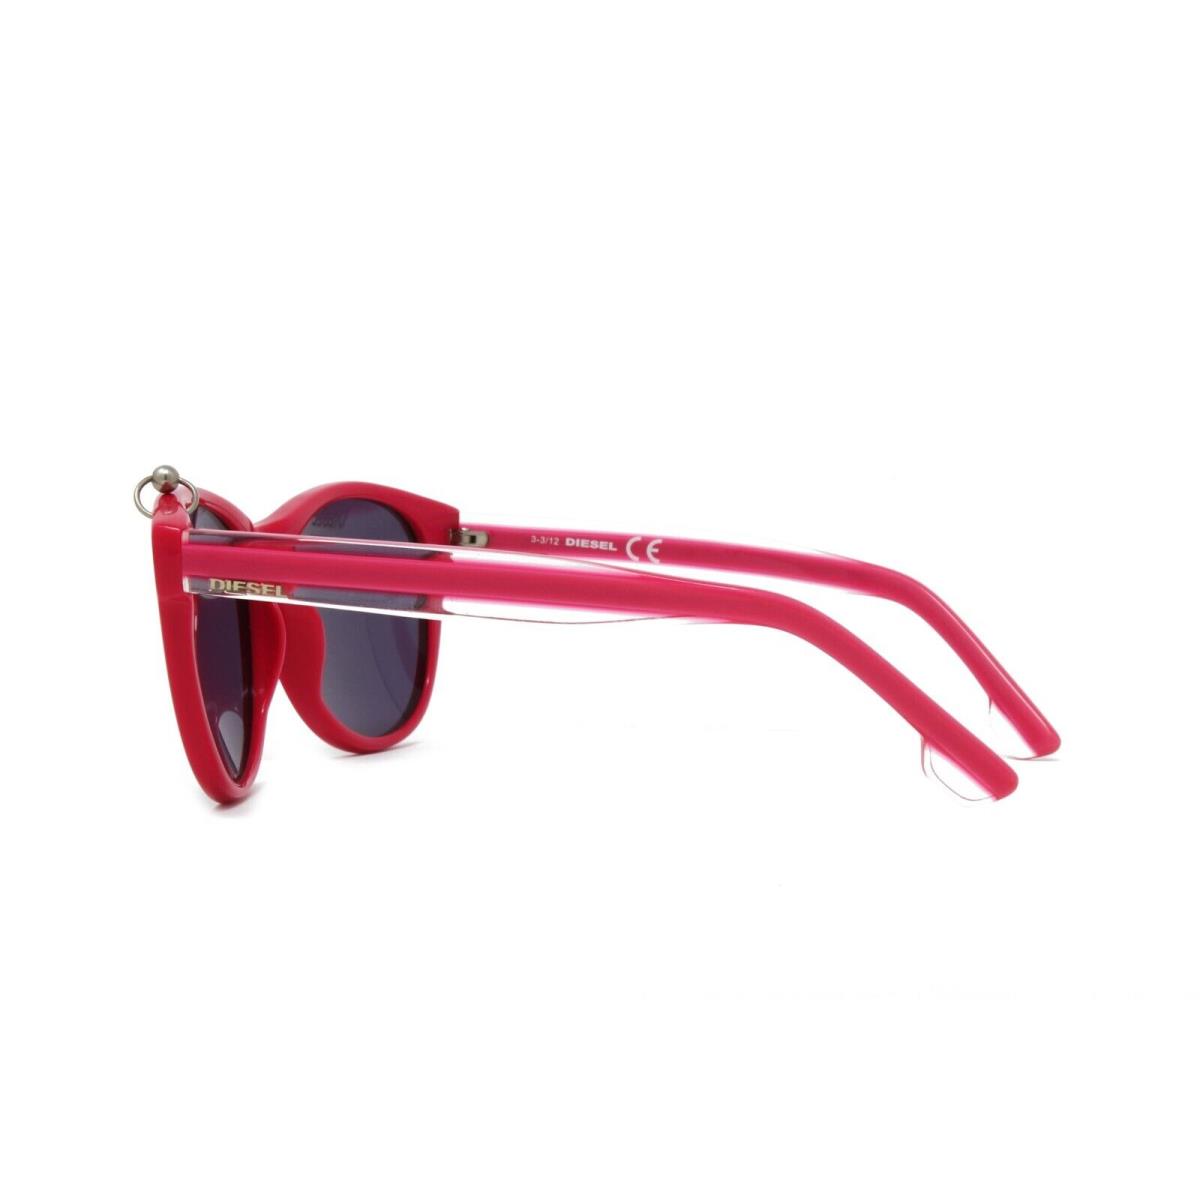 Diesel sunglasses  - Pink Frame, Gray Lens 1